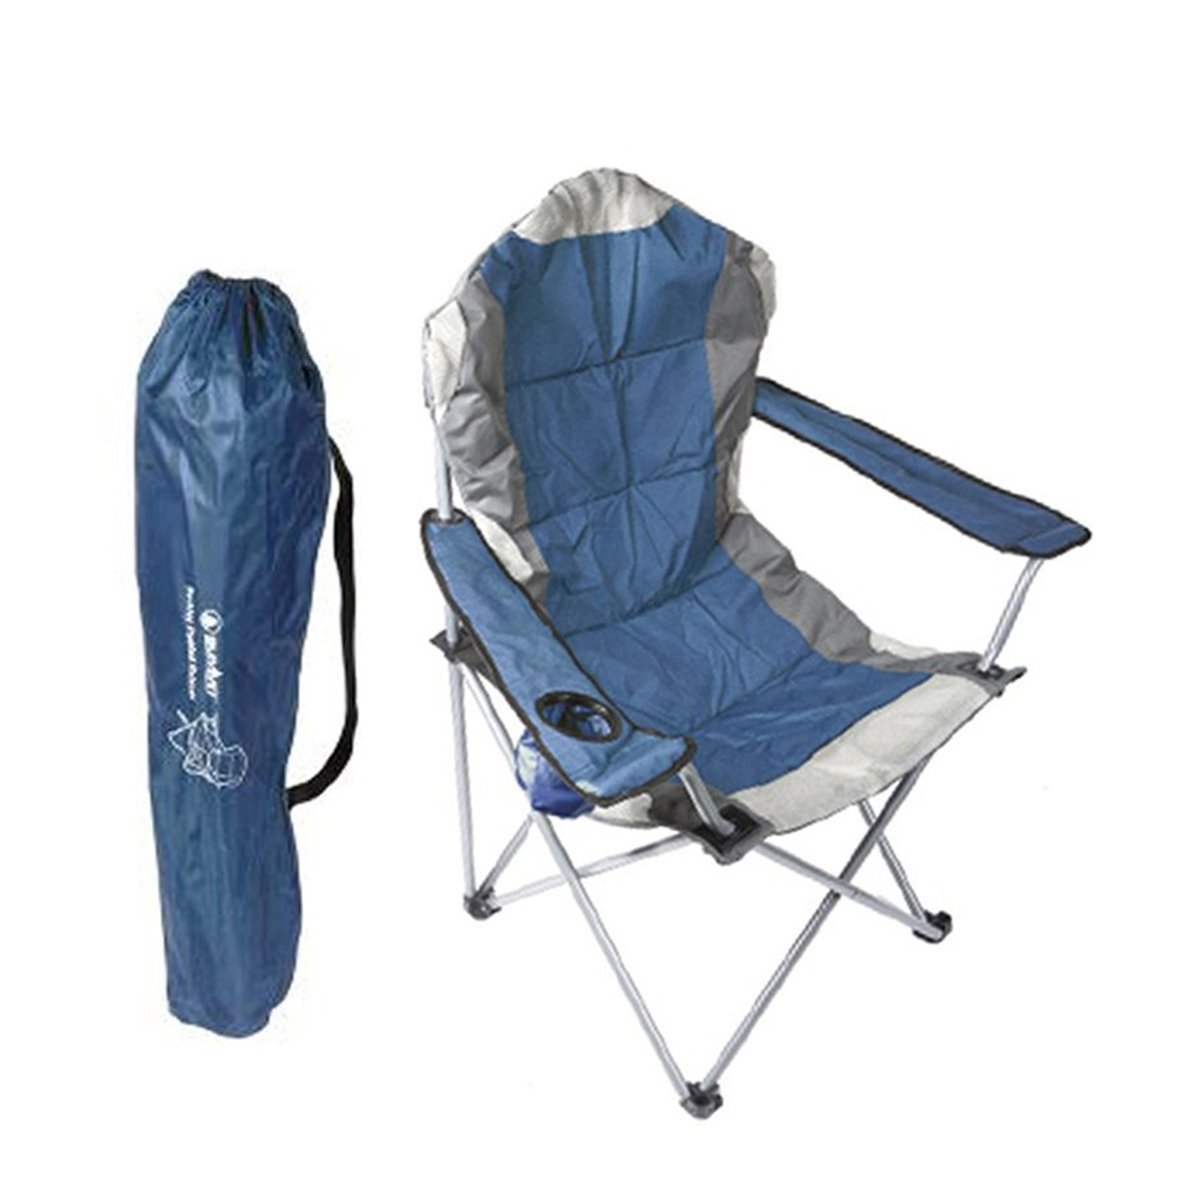 Summit Berkley Yüksek Konforlu & Takviyeli Kamp Sandalyesi Blue